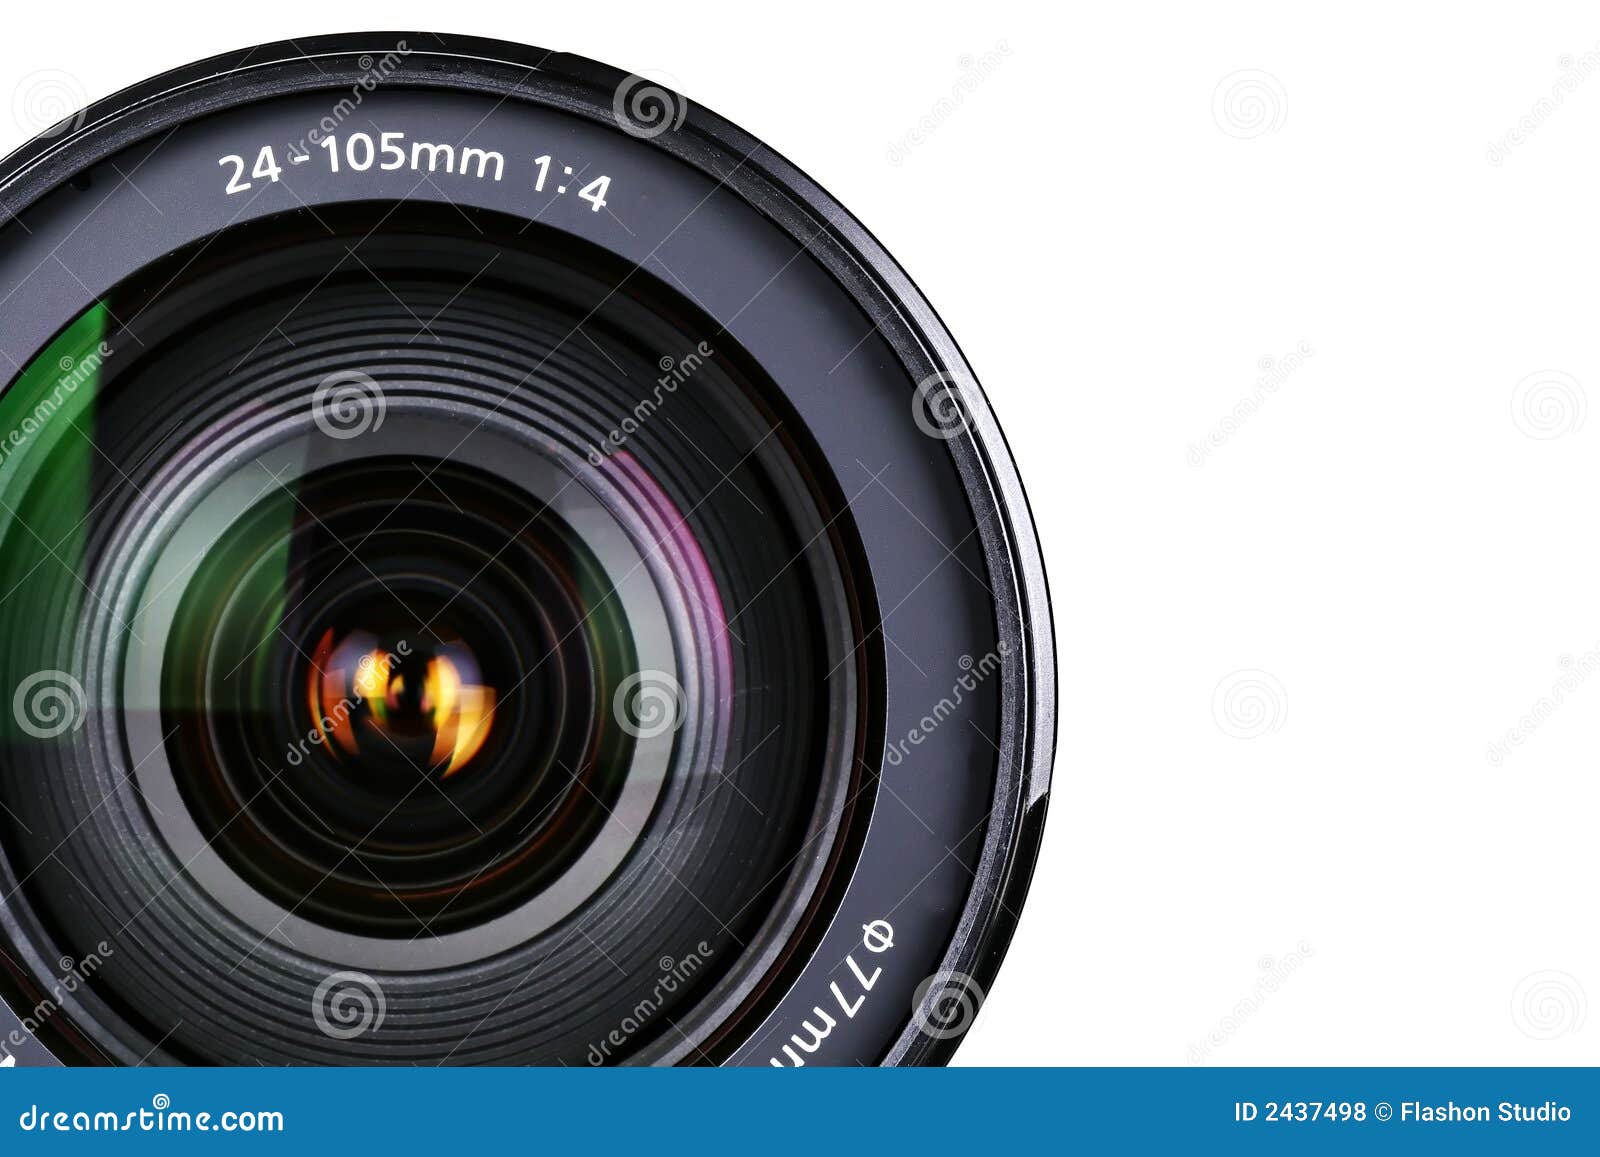 camera zoom lens